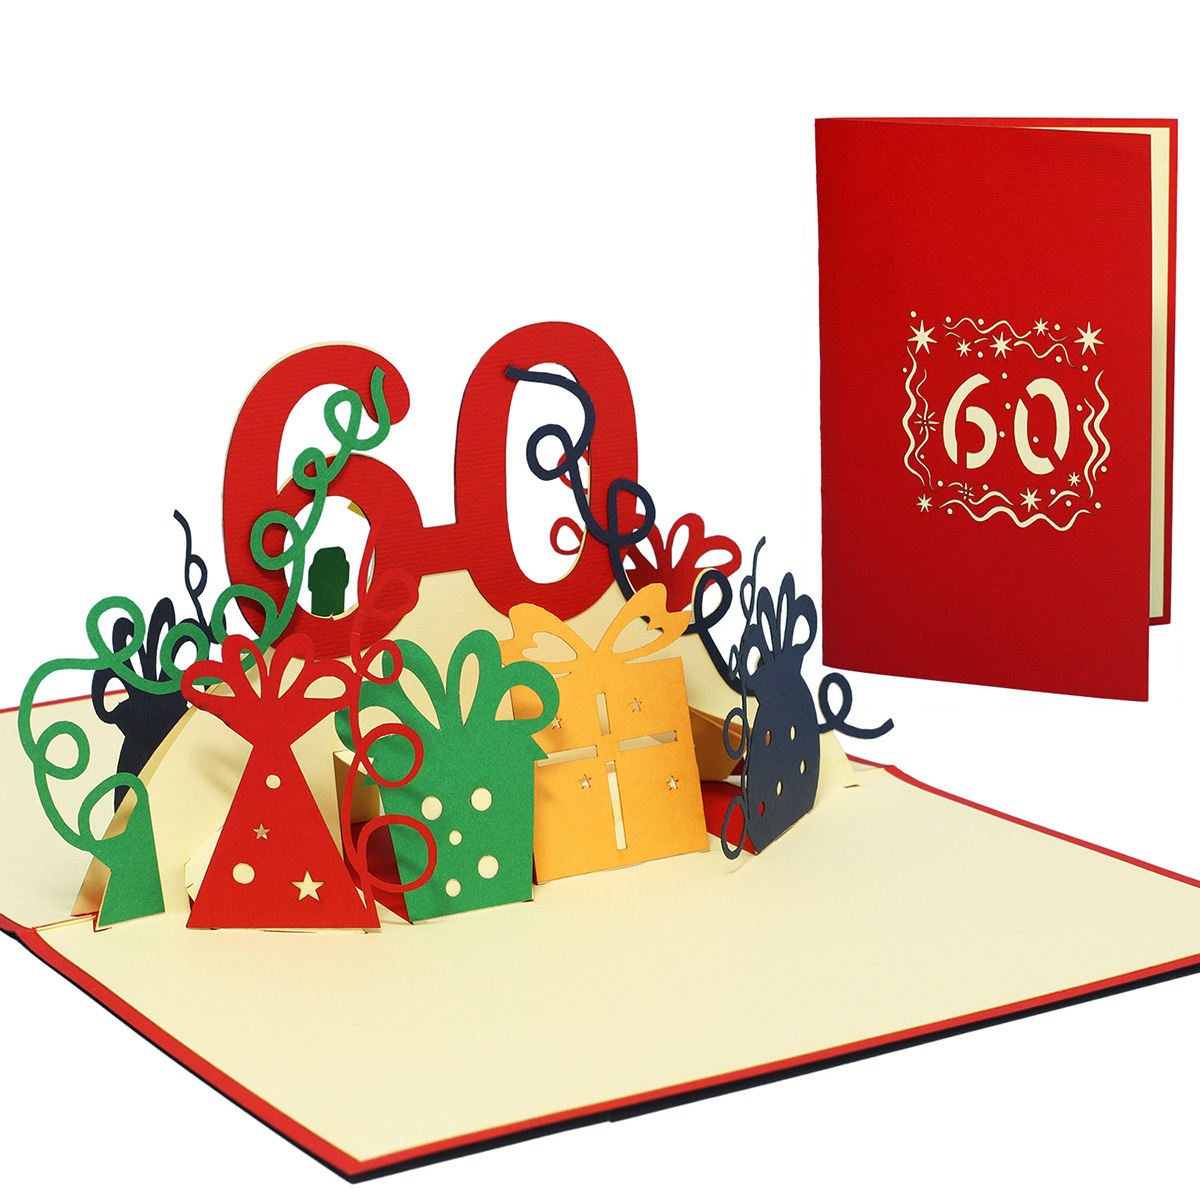 LINPOPUP Pop Up 3D Karte, Geburtstagskarte, Glückwunsch karte Gutschein, 60 Geburtstag, LIN17264, LINPopUp®, N22